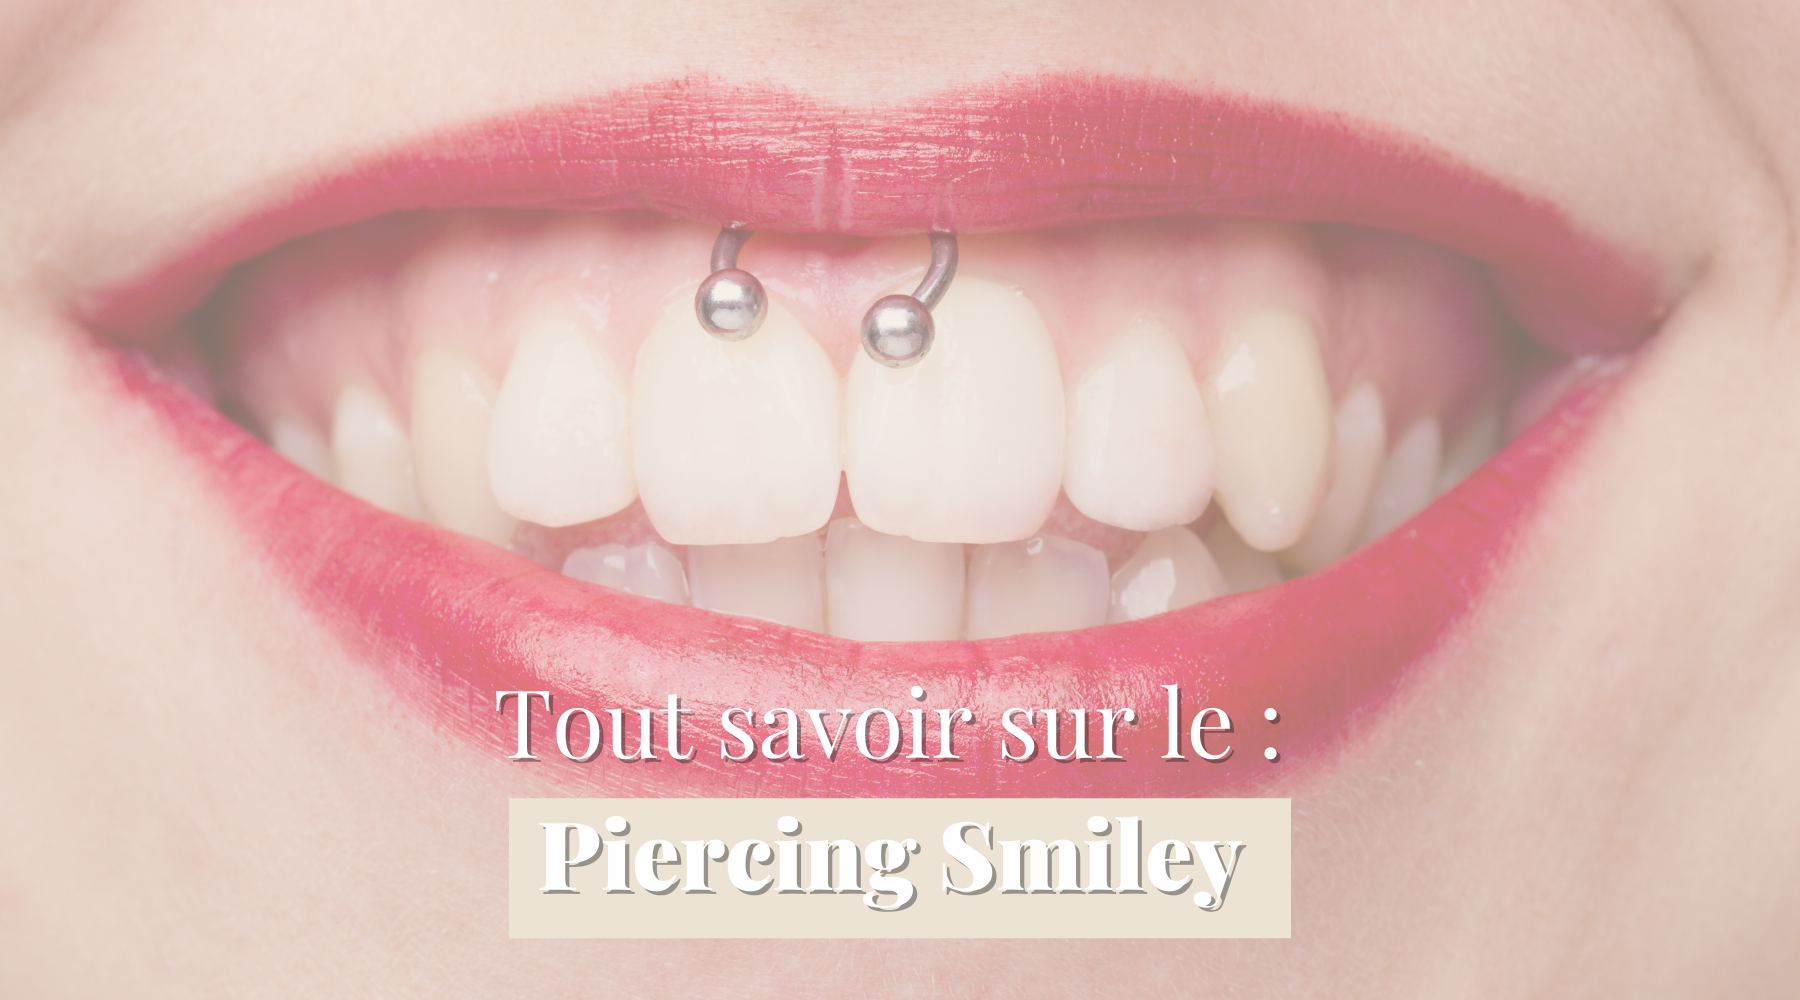 Piercing Smiley - Douleur, Cicatrisation, Types de bijoux.. on vous dit tout chez Obsidian Piercing